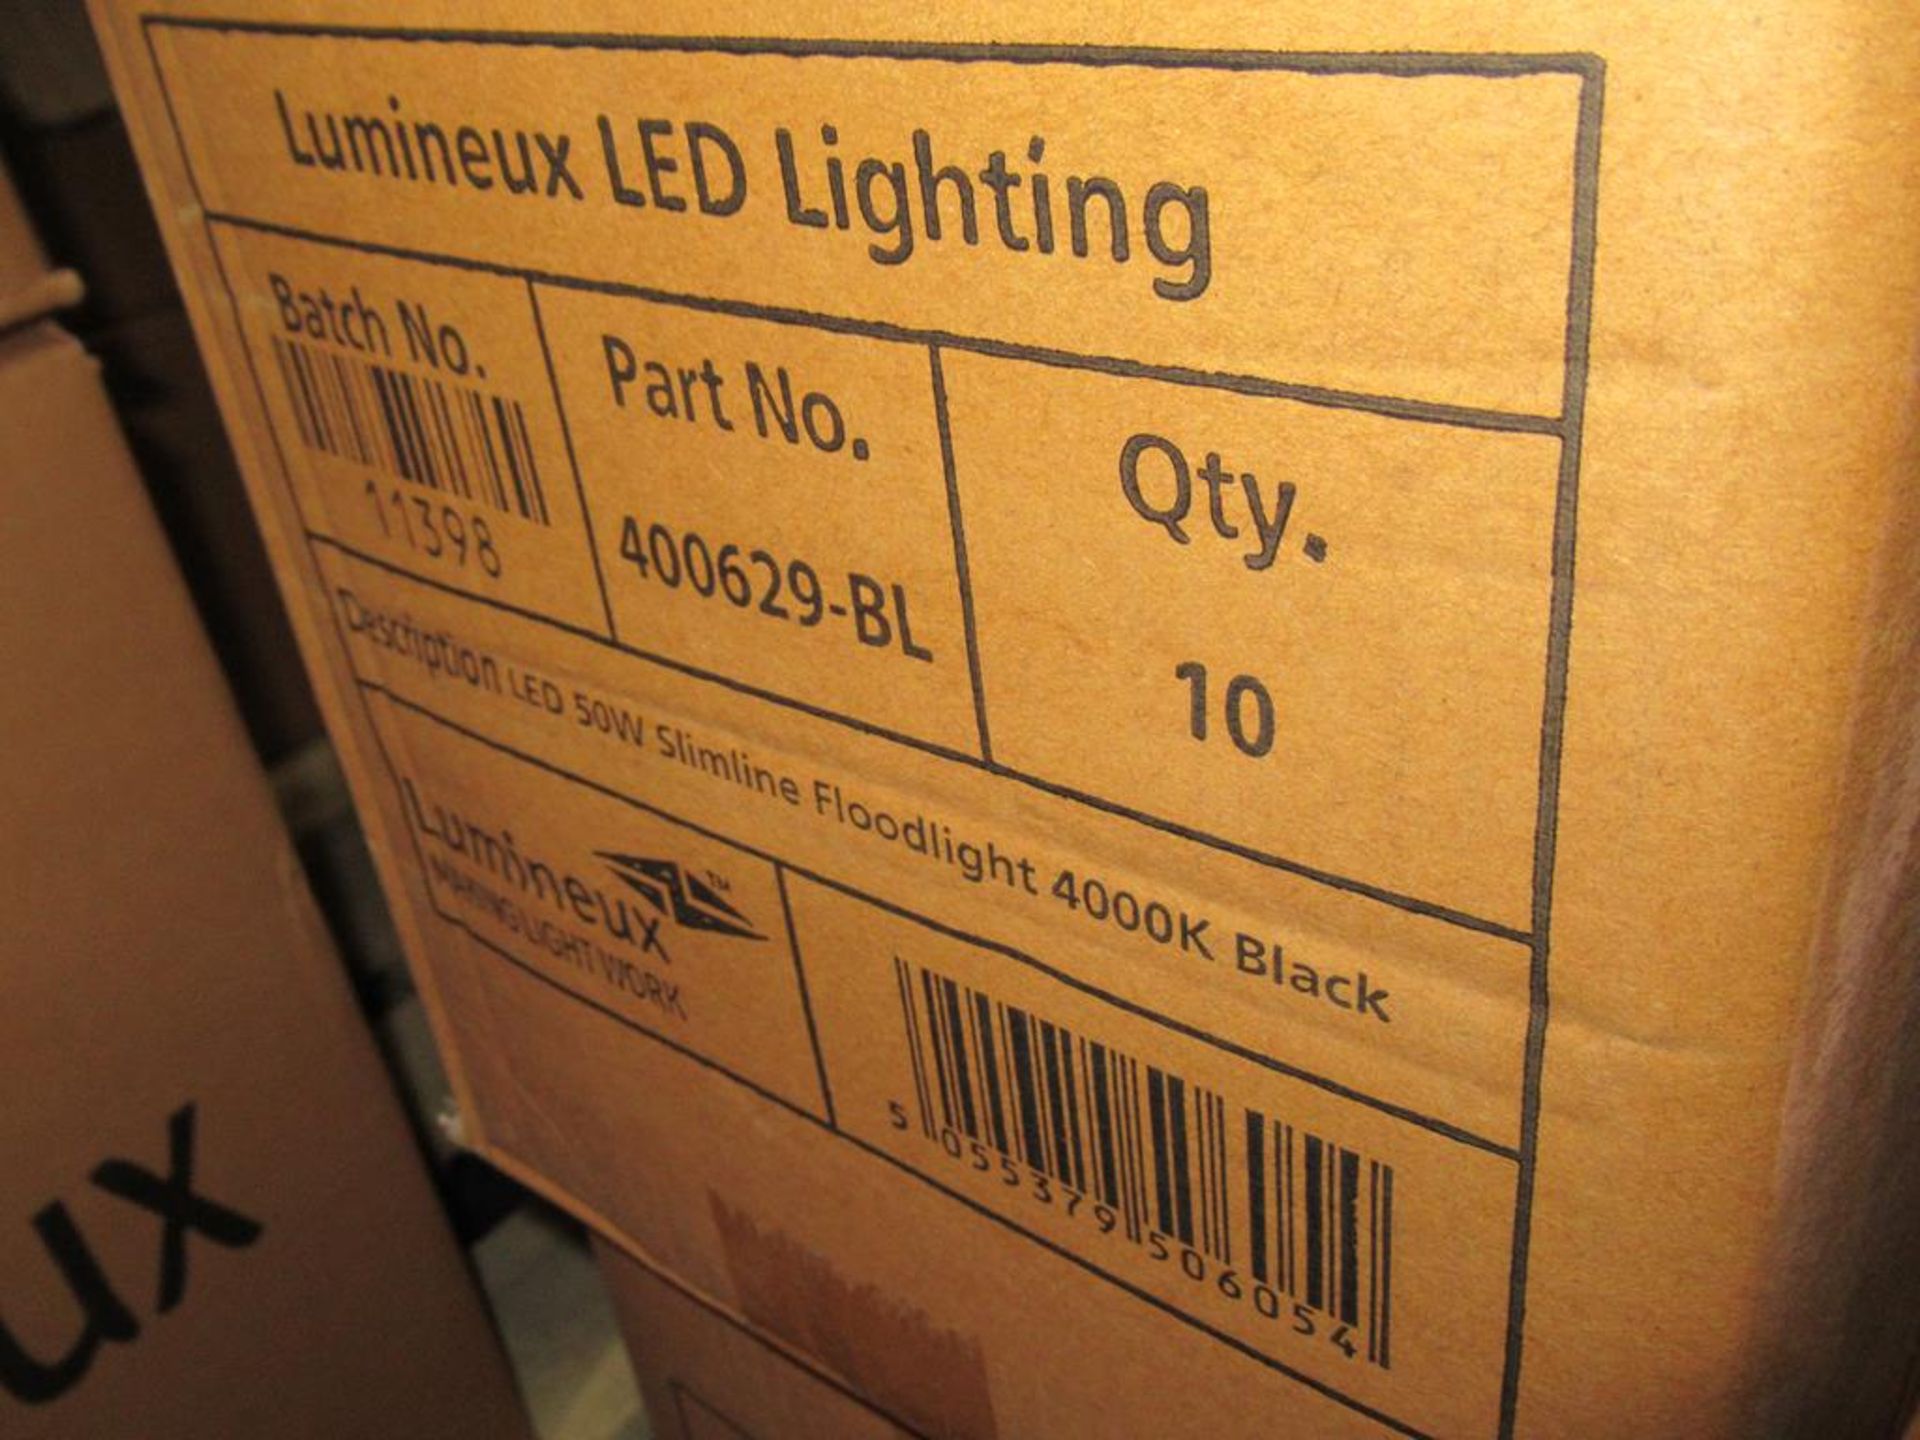 20 x Lumineux 50W LED Slimline Floodlight 4000K OEM Trade Price £ 720 - Image 2 of 3